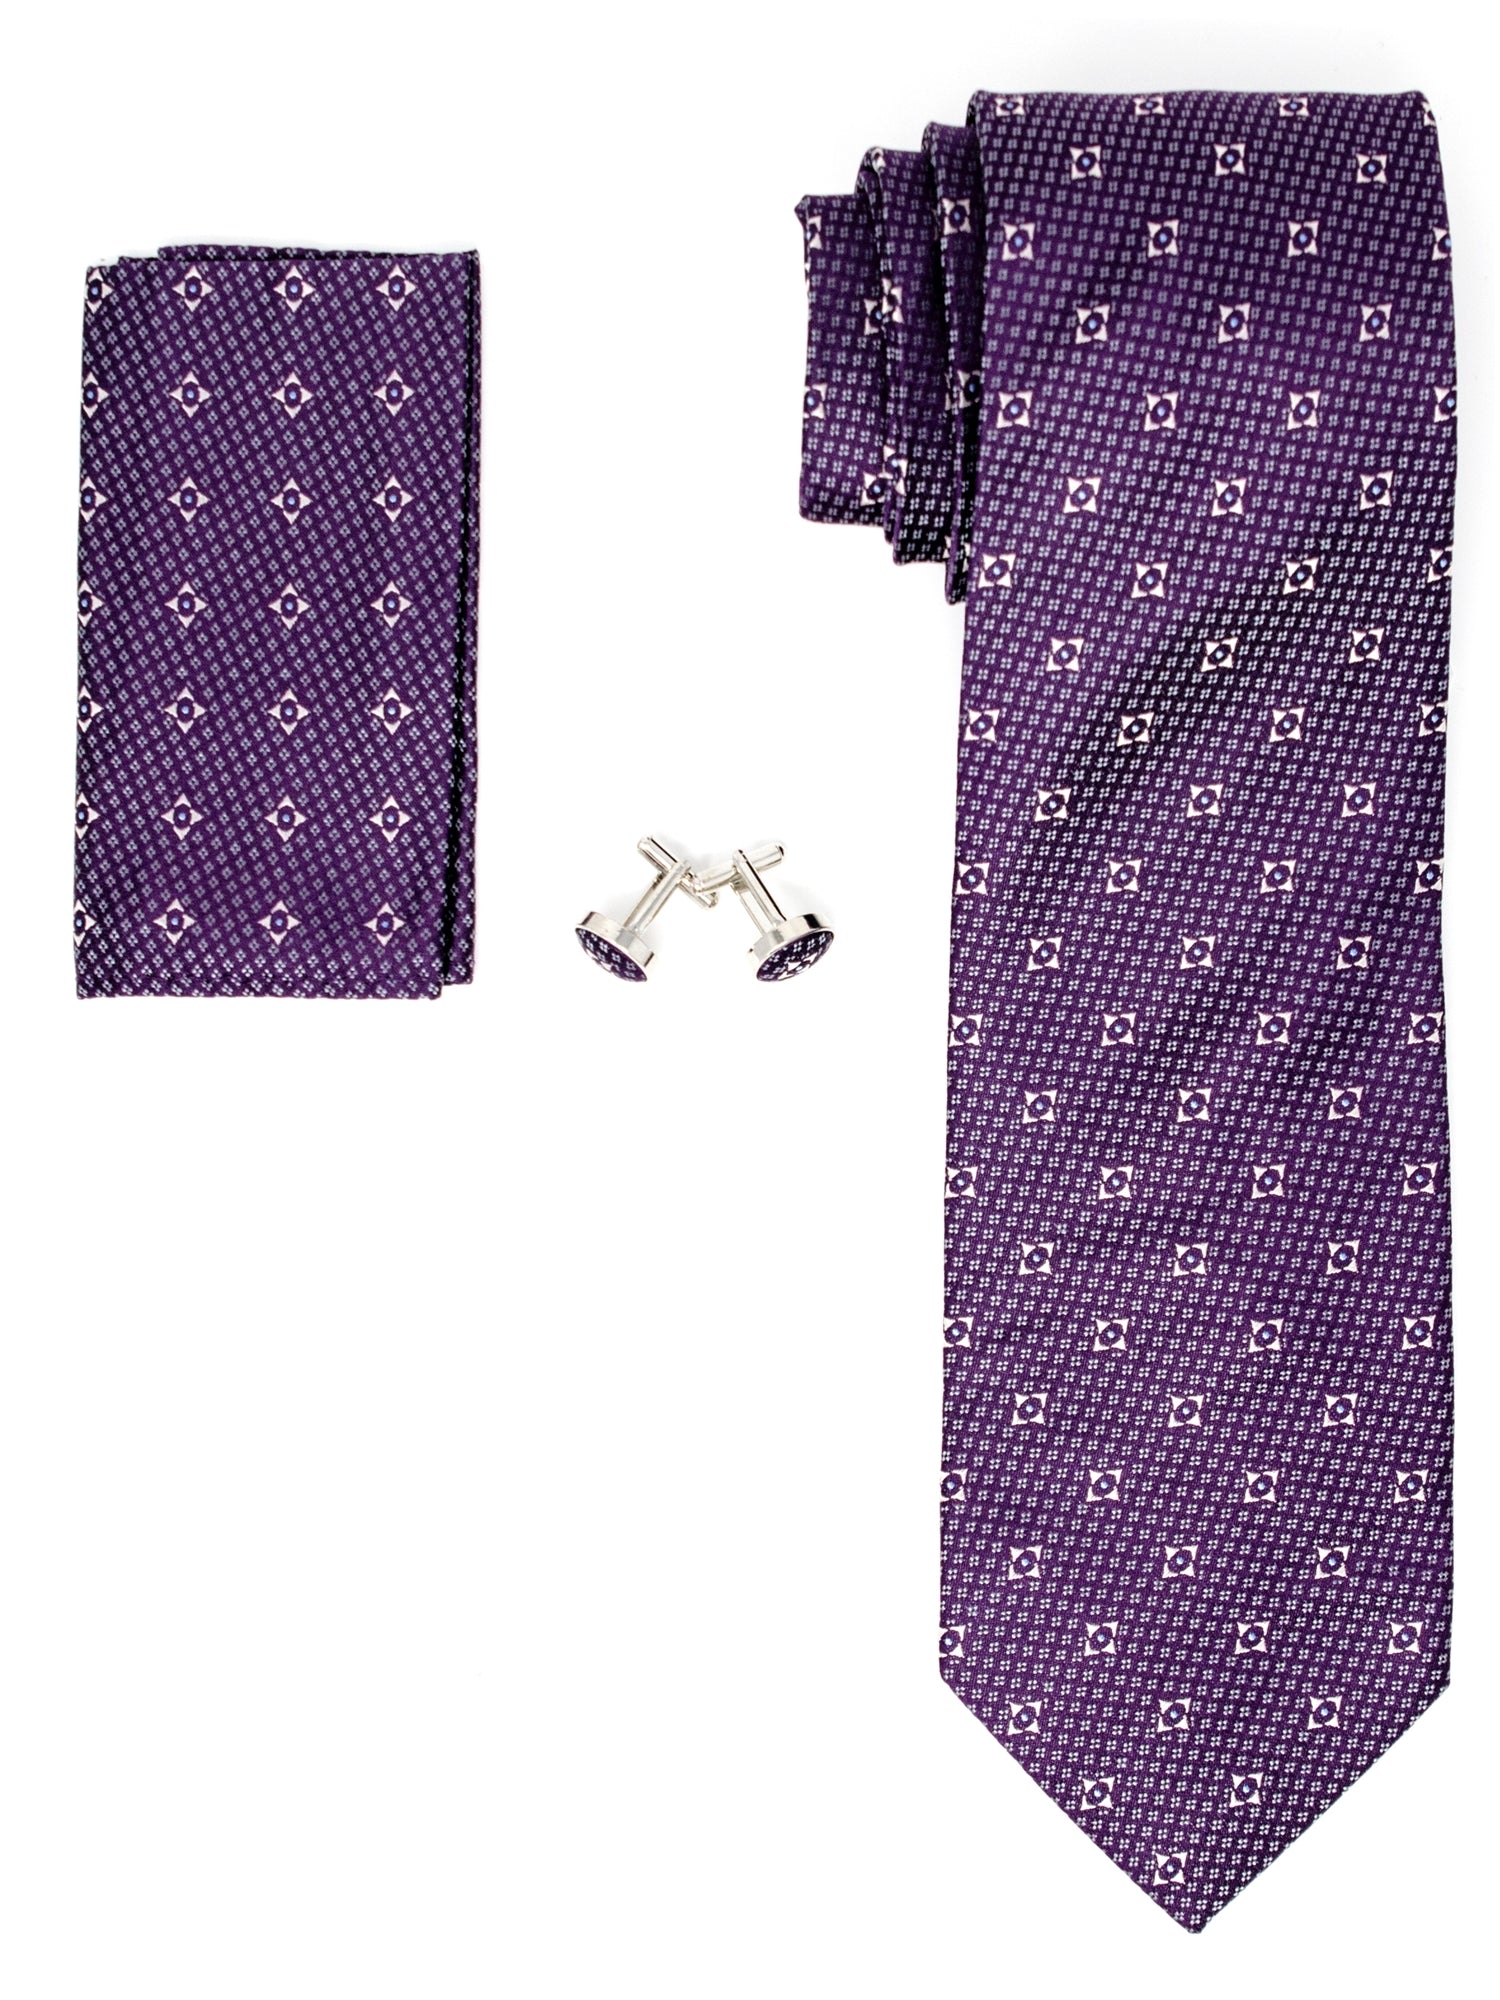 Men's Silk Neck Tie Set Cufflinks & Hanky Collection Neck Tie TheDapperTie Purple Geometric Regular 